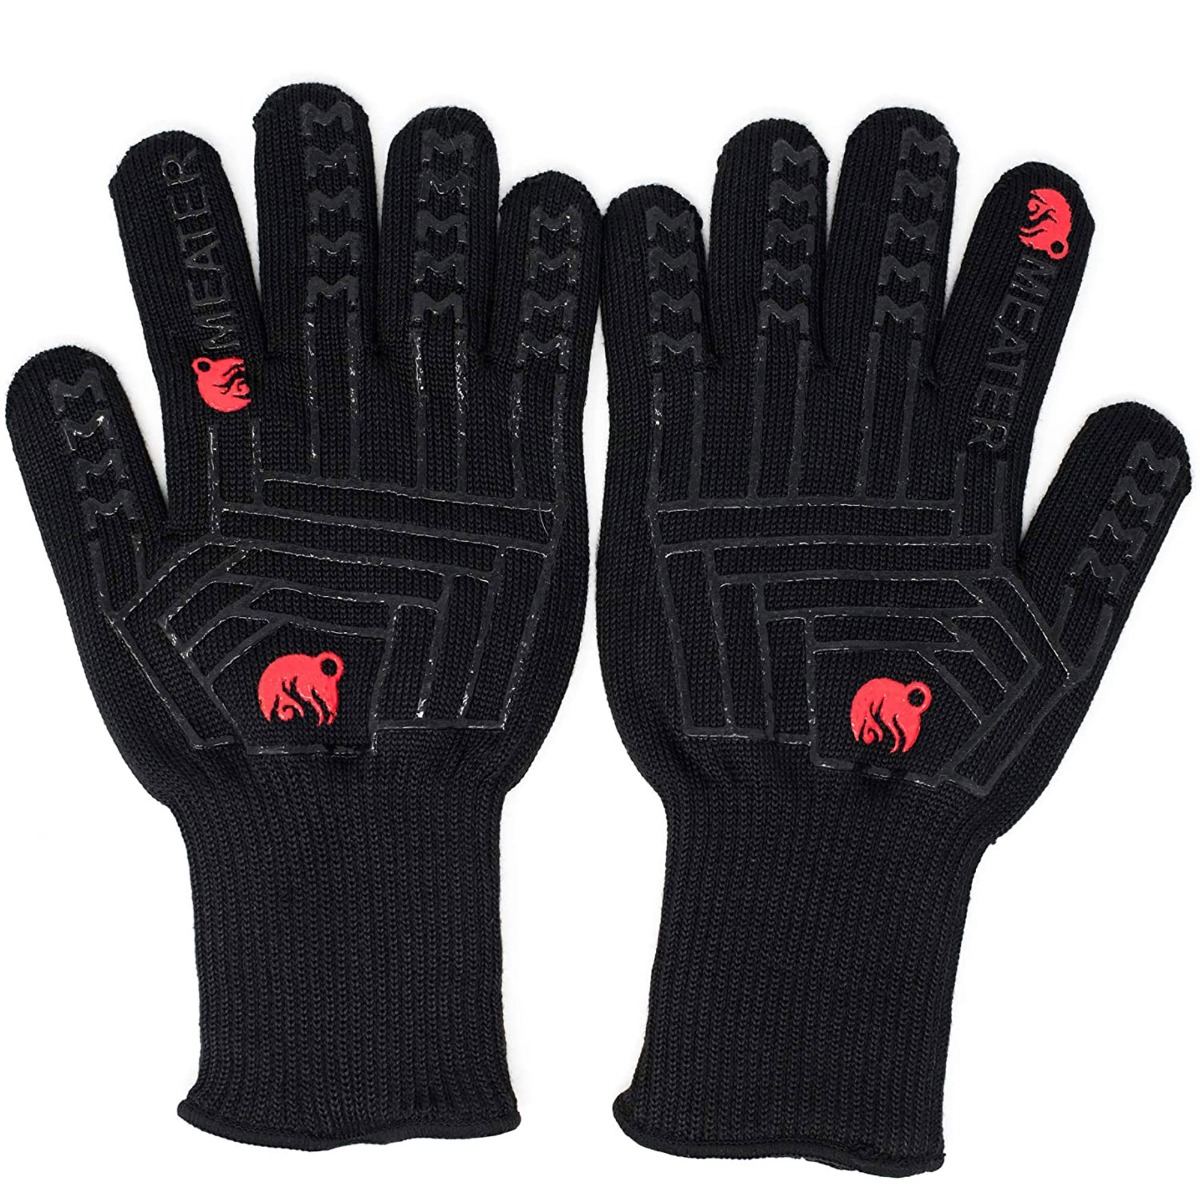 Θερμοανθεκτικά Γάντια 5 δαχτύλων, με επένδυση και σιλικόνη - Meater®